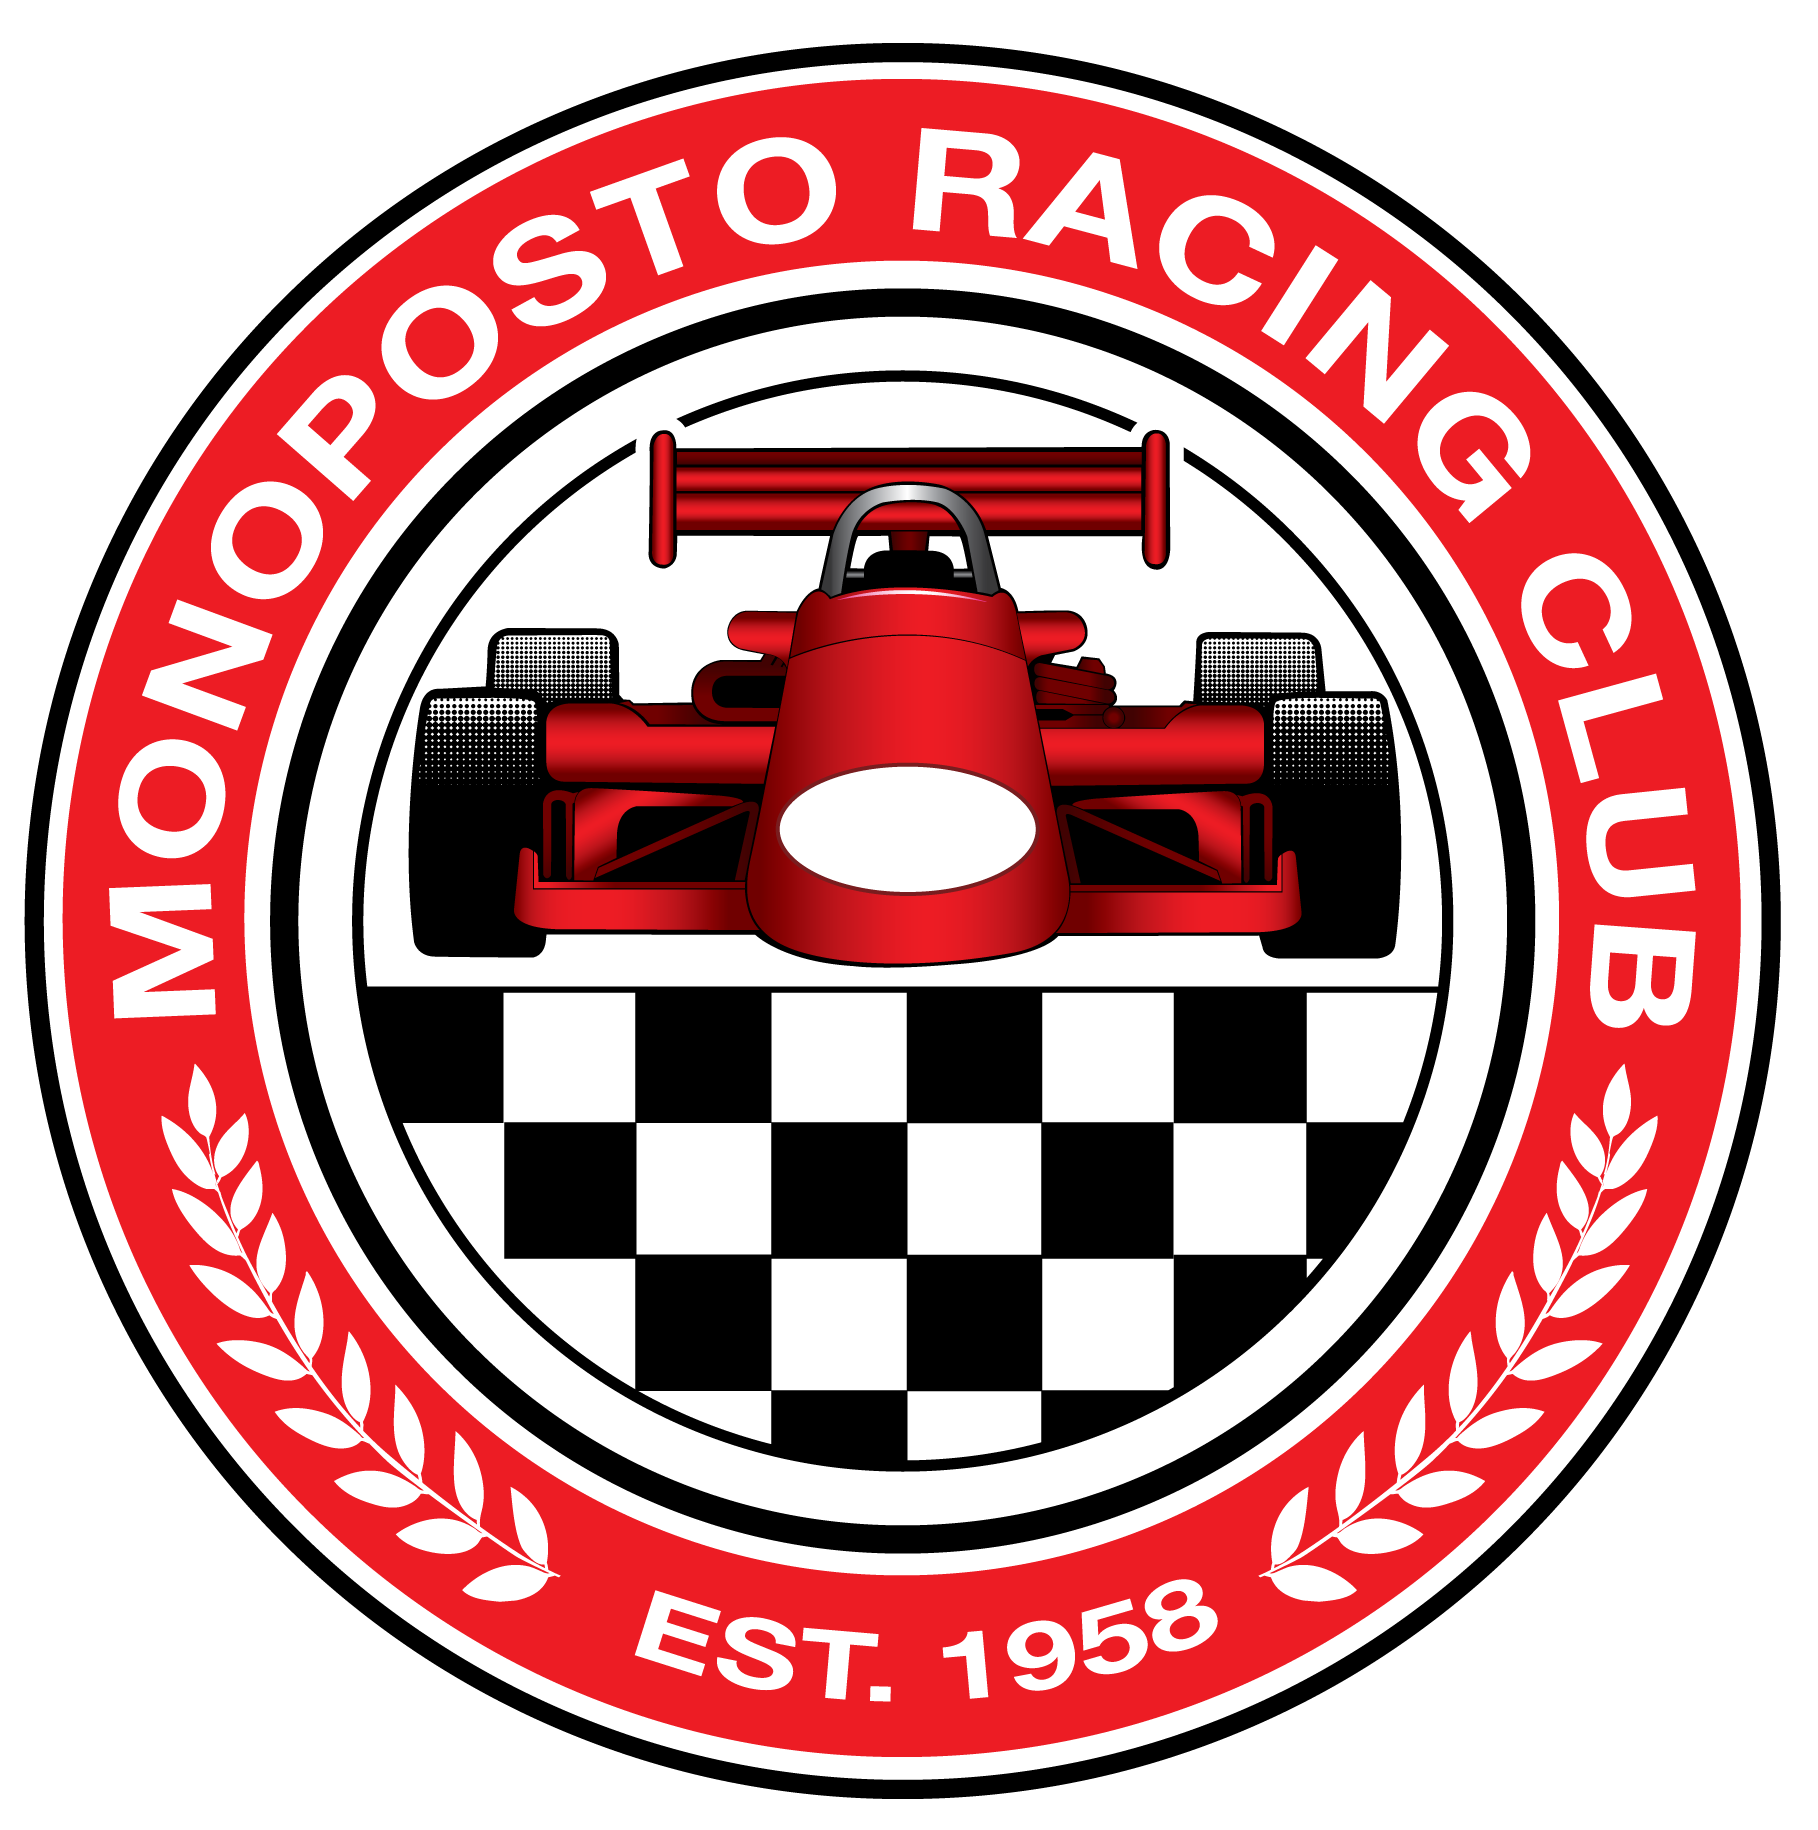 Monoposto Racing Club